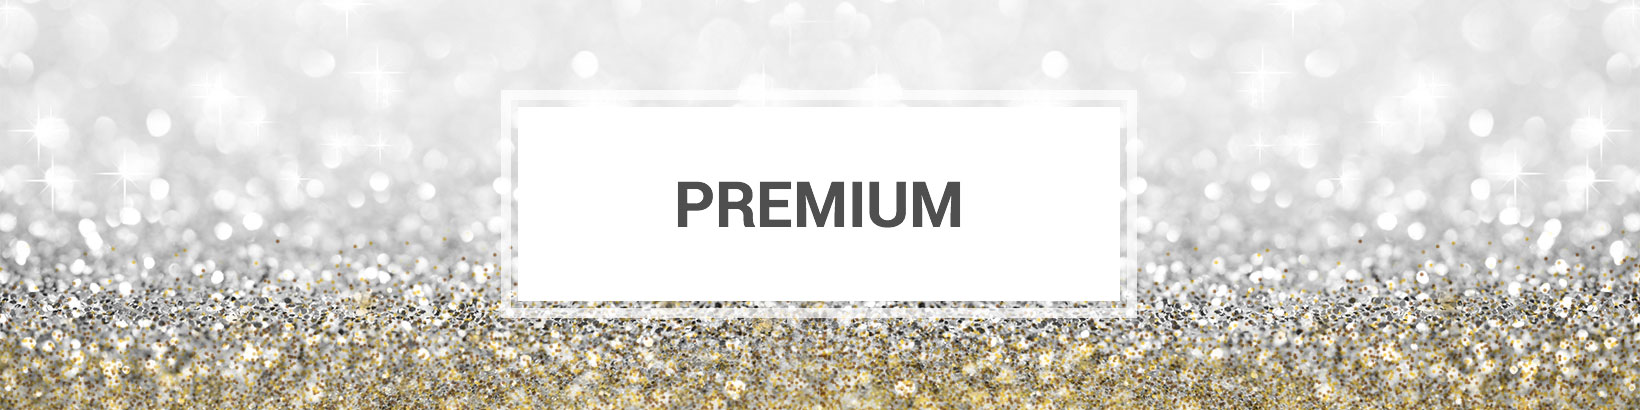 premium-header